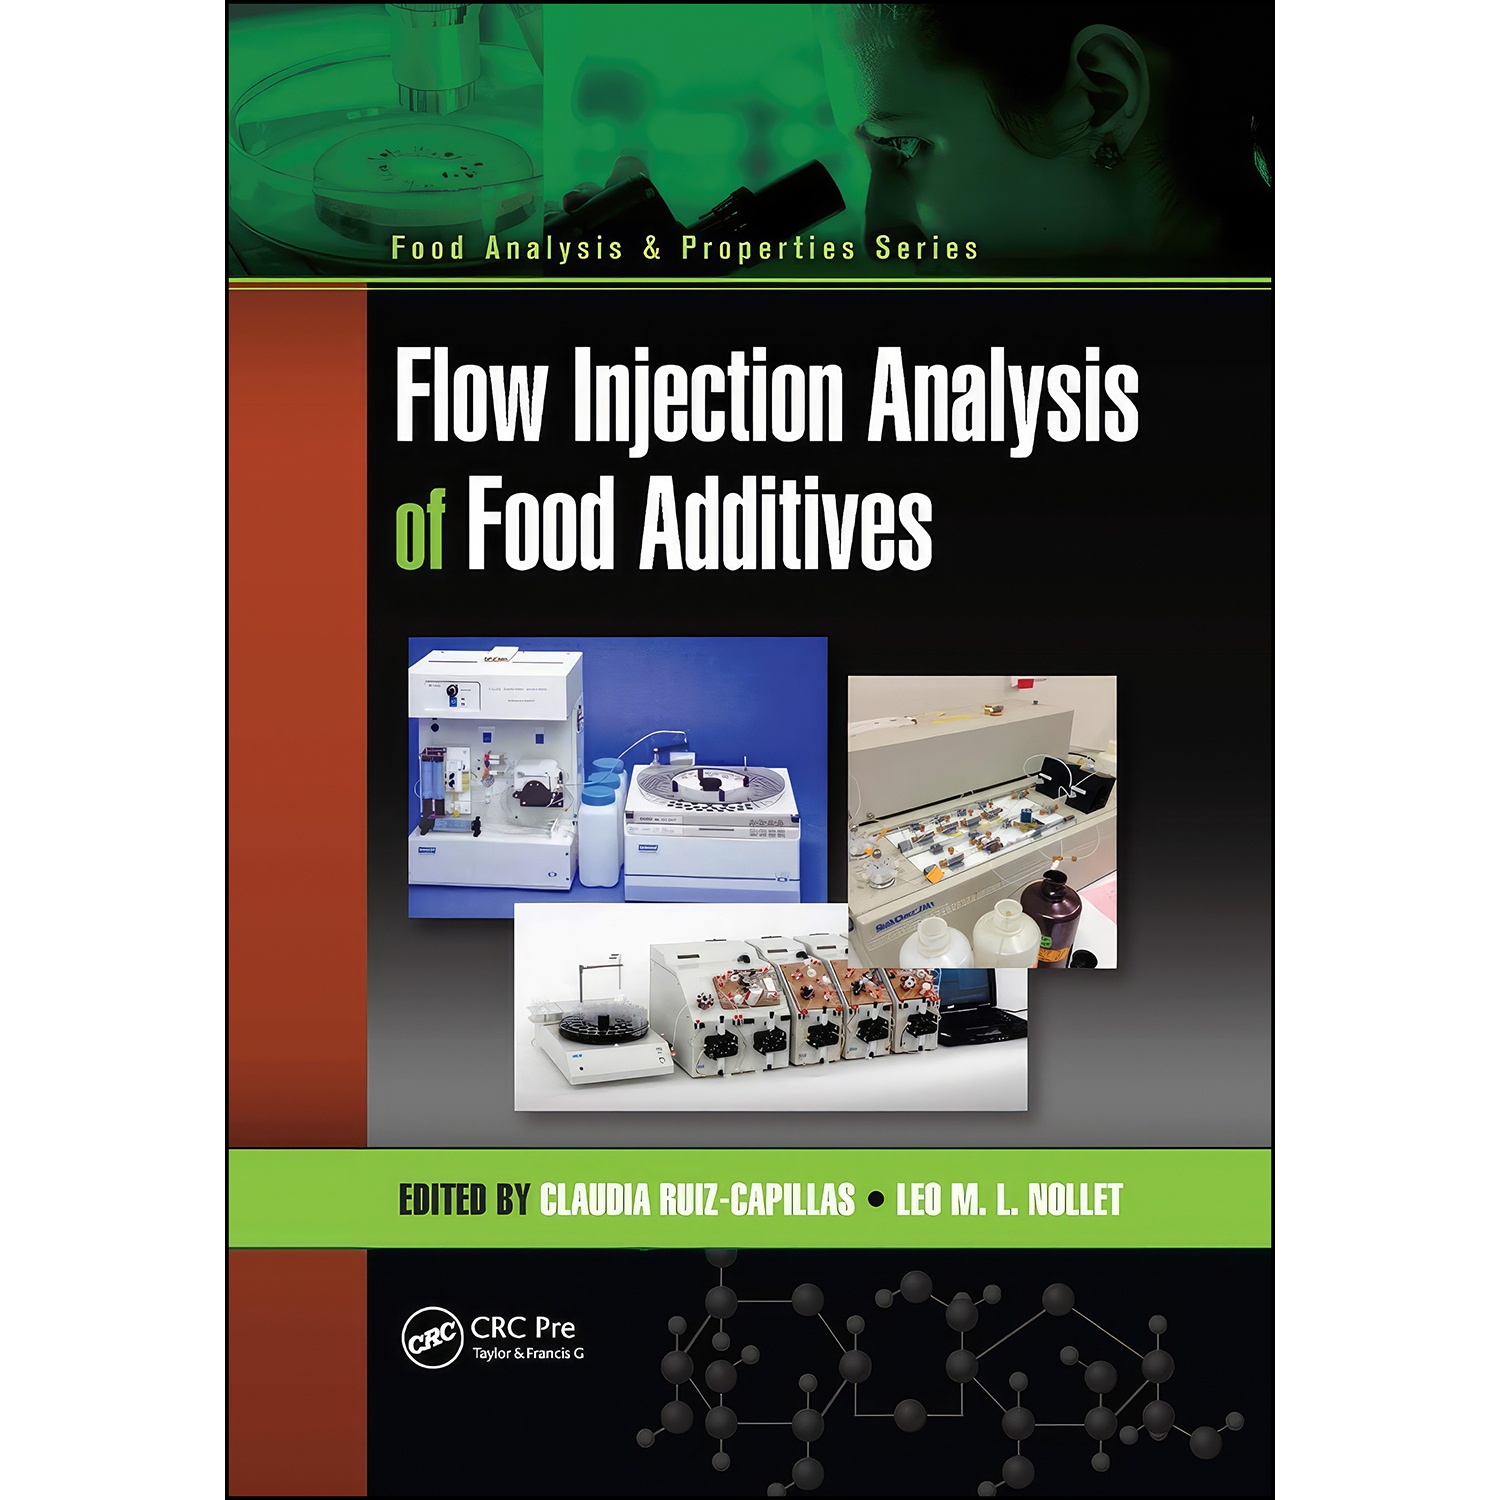 کتاب Flow Injection Analysis of Food Additives اثر جمعي از نويسندگان انتشارات تازه ها